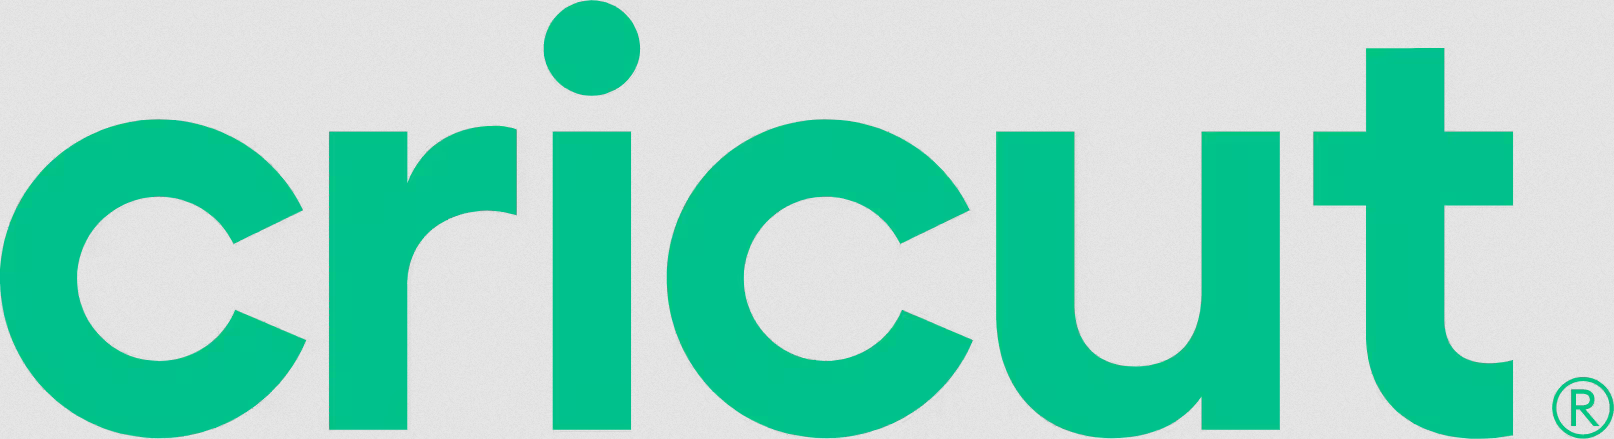 Logotipo de Cricut